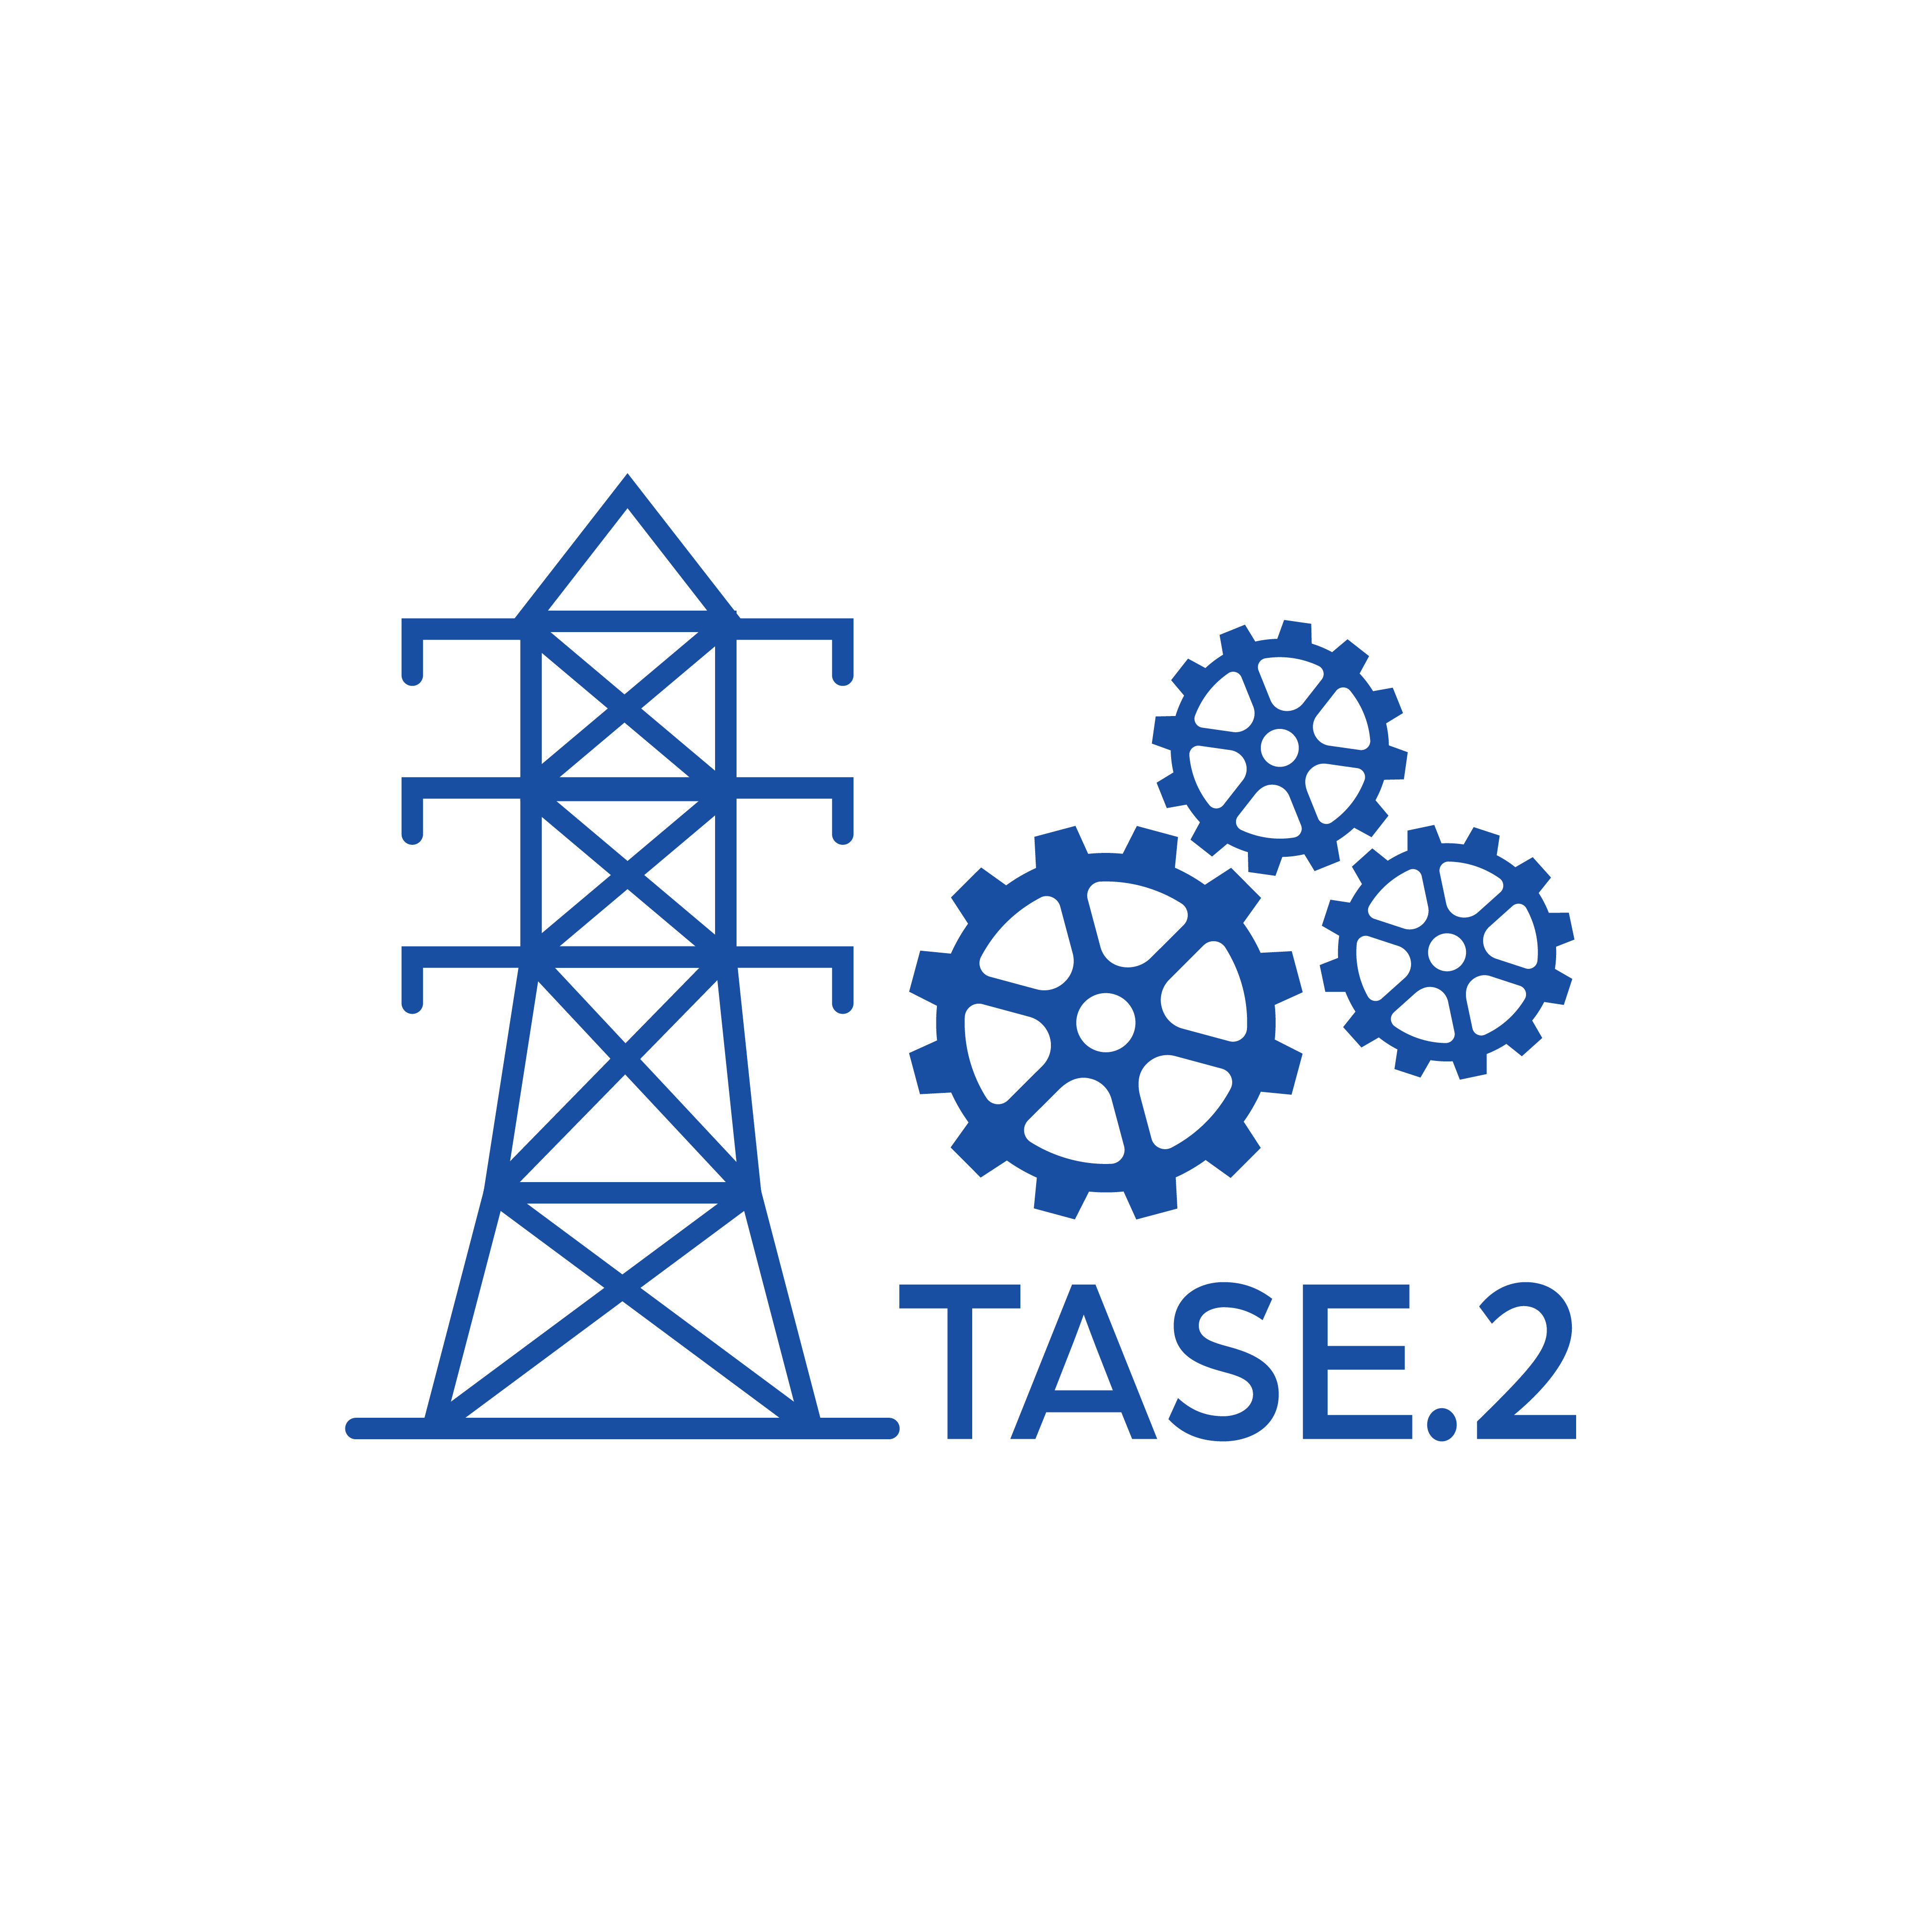 TASE.2 Mid Blue